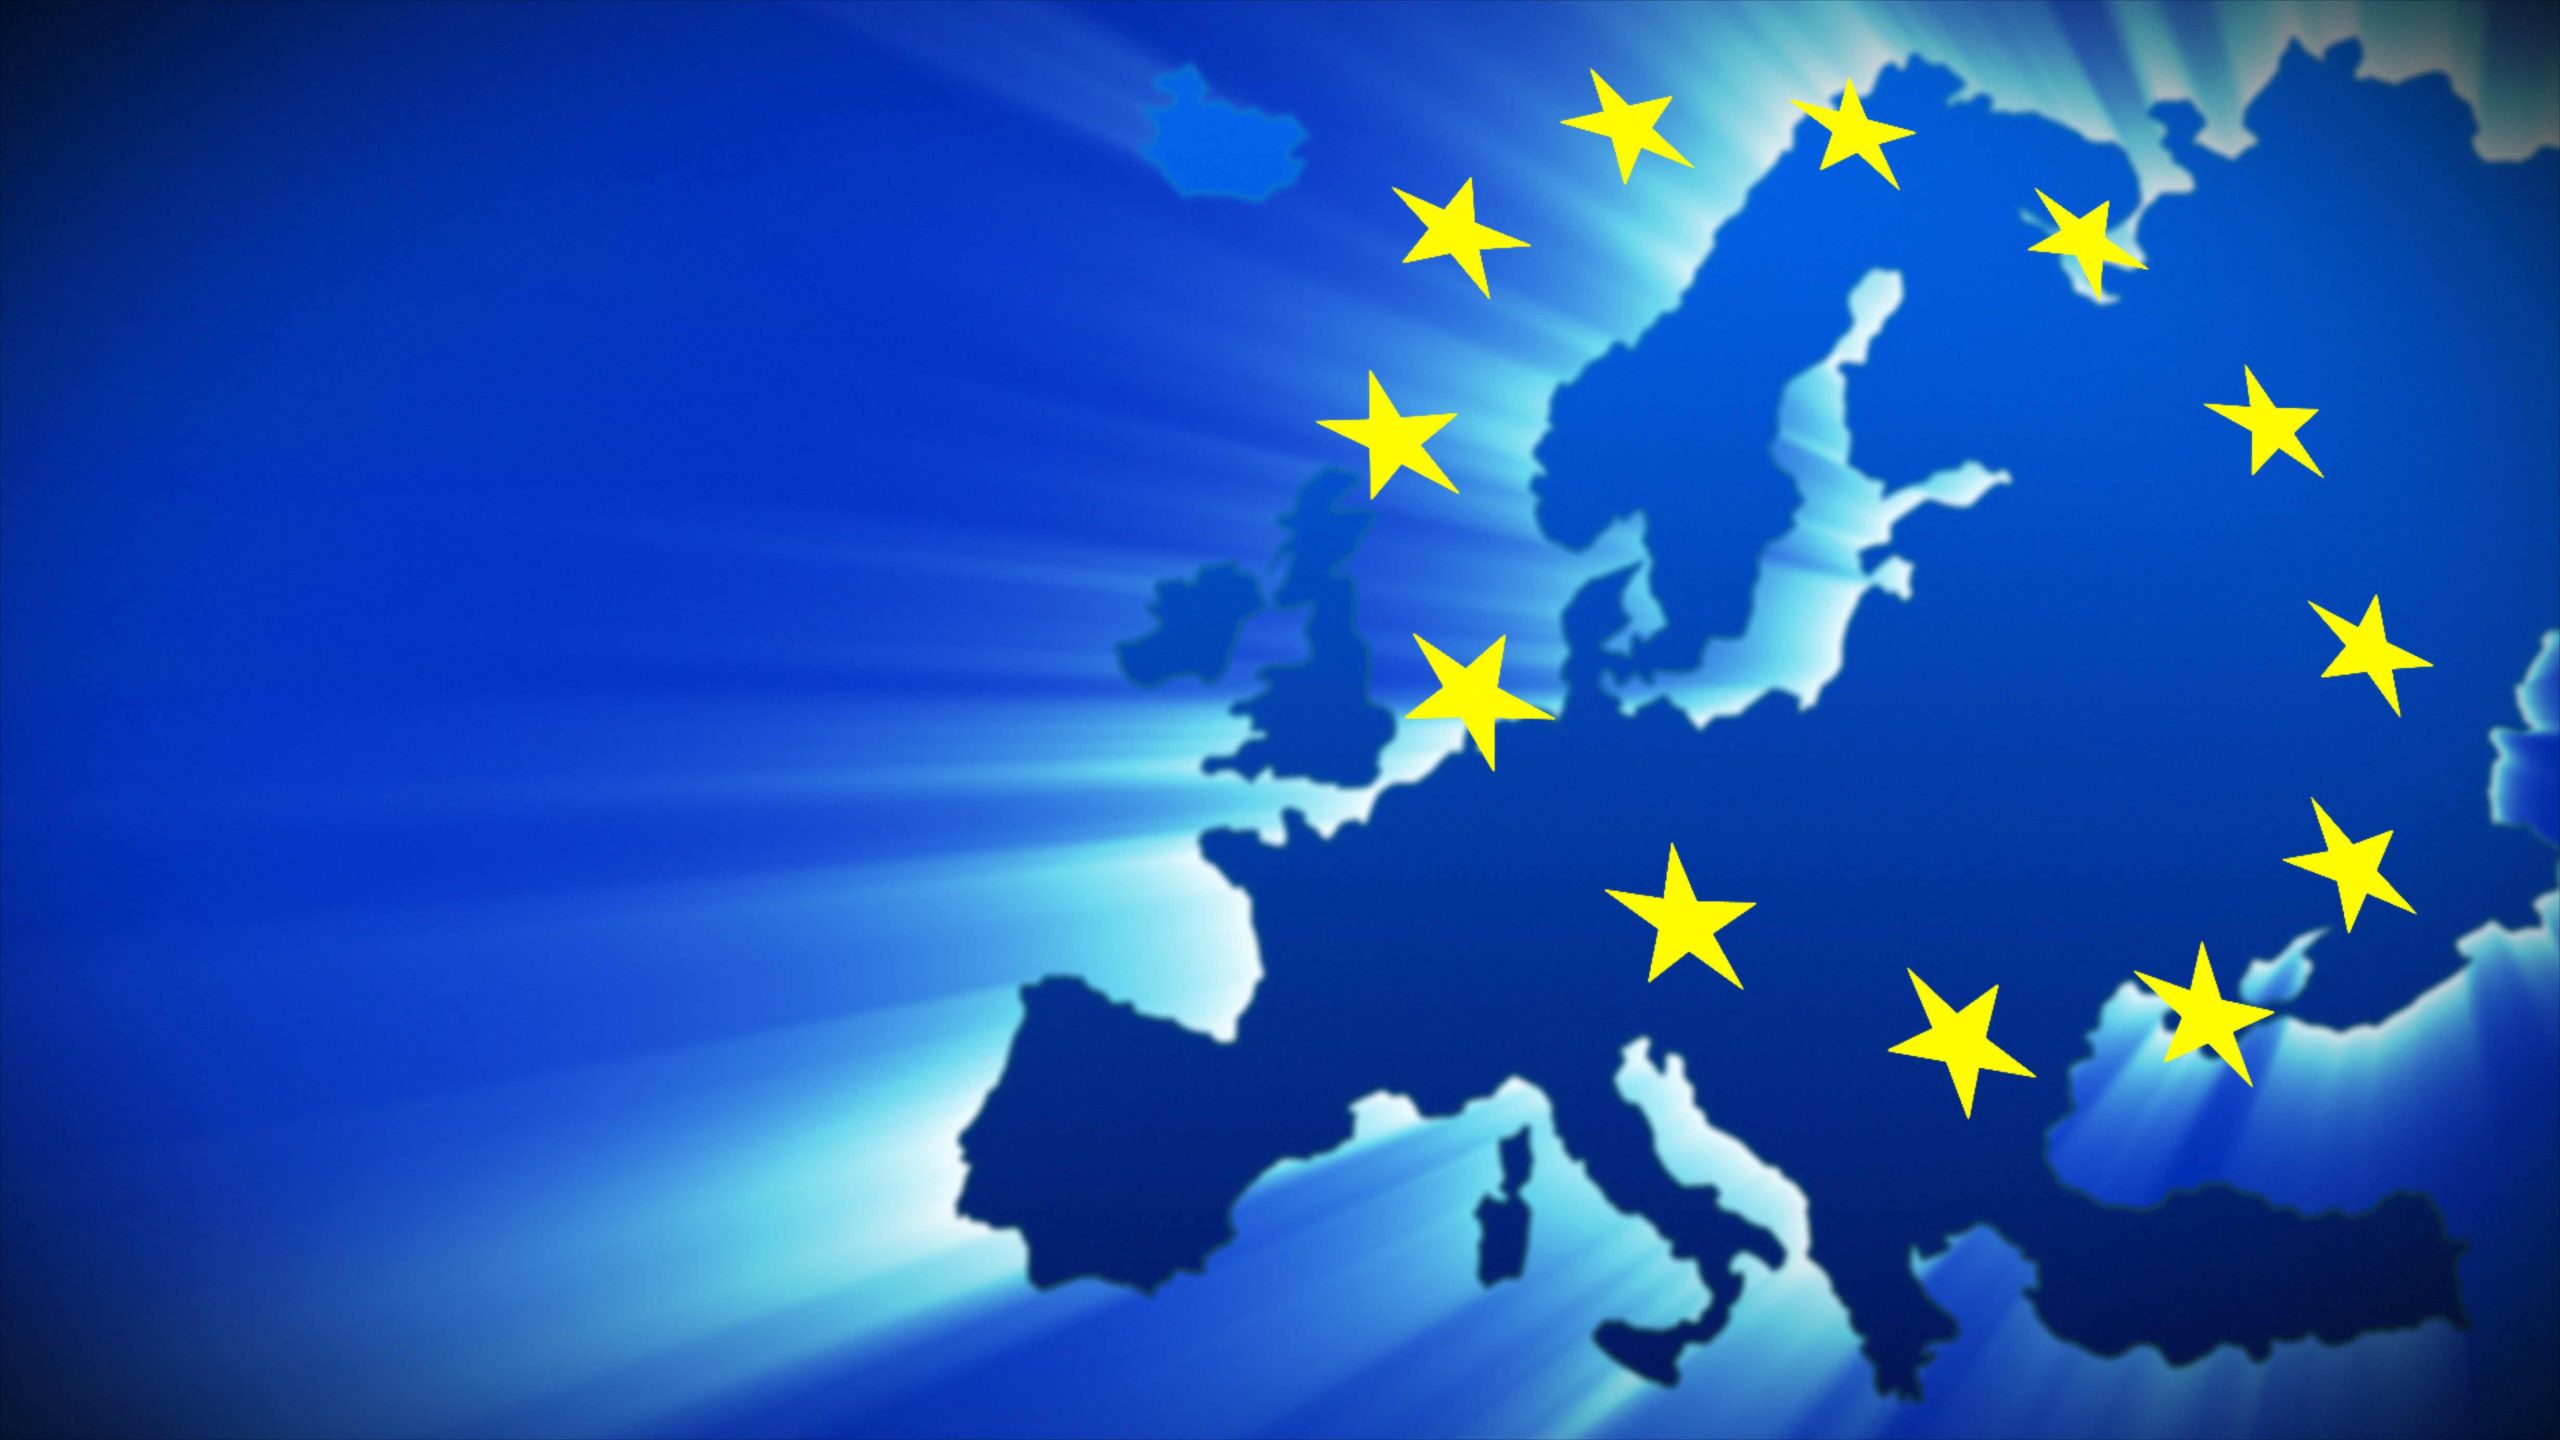 Διαφωνίες για όλα για το Ταμείο Ανάκαμψης της ΕΕ – Όλα είναι ανοιχτά – Τι προτείνει ο Σαρλ Μισέλ